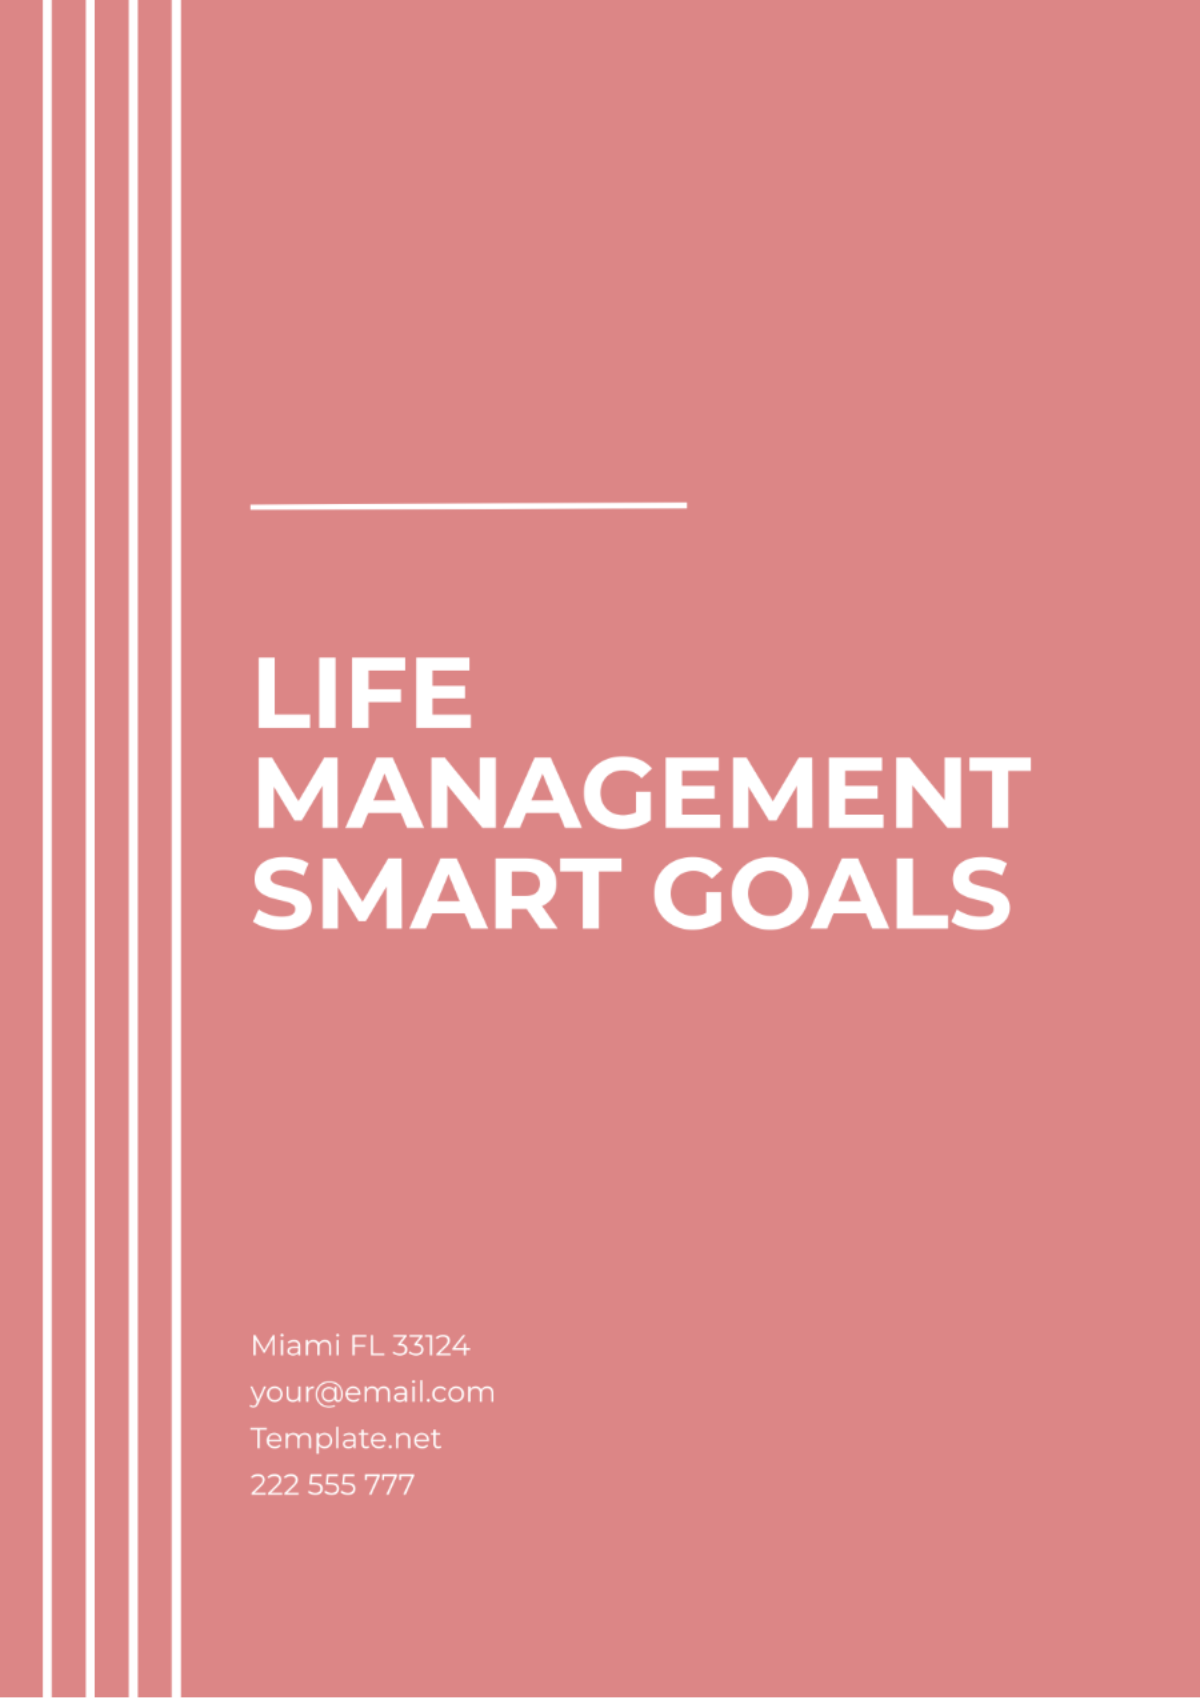 Life Management SMART Goals Template